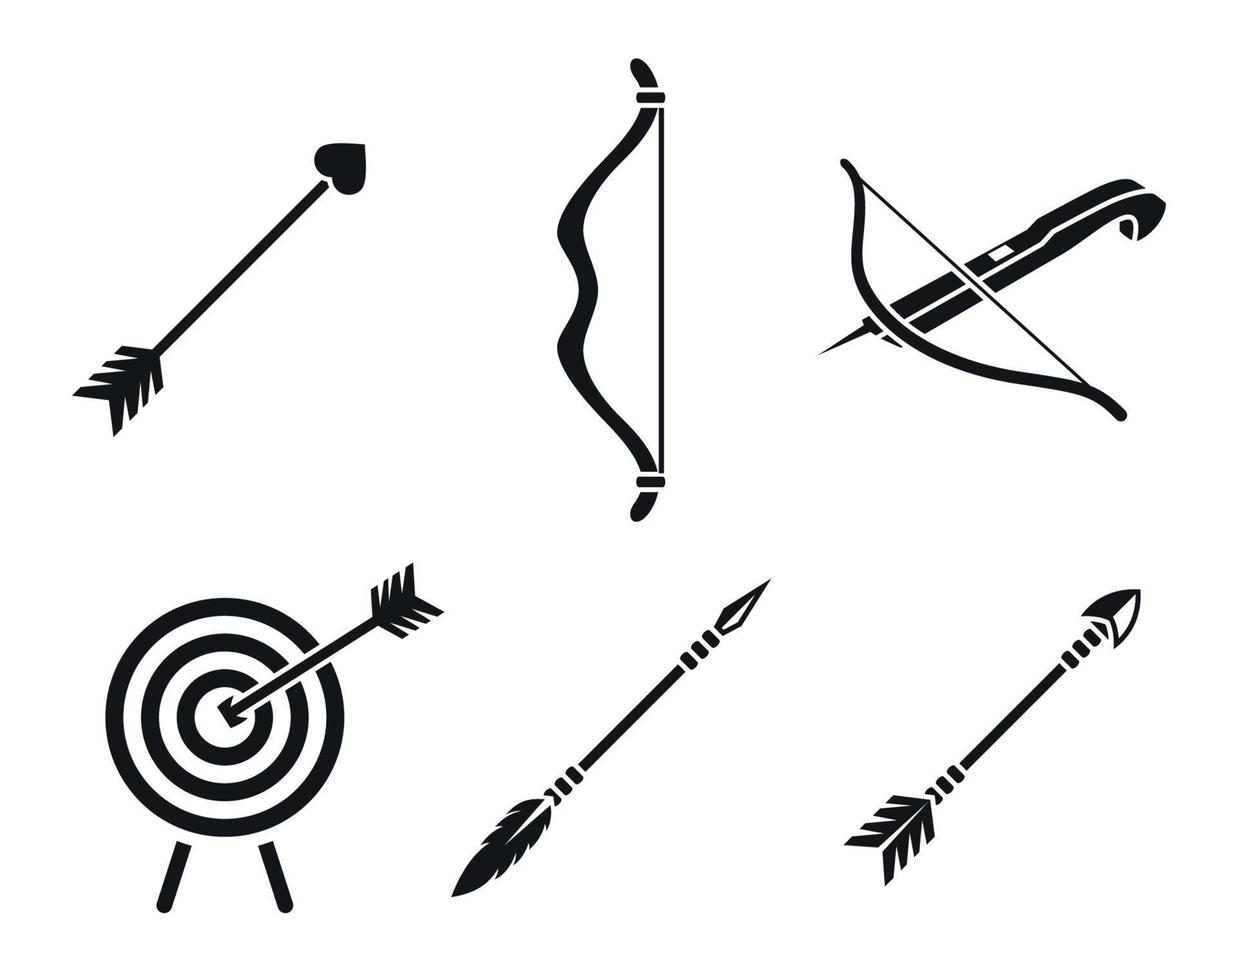 símbolos de ícones de arco e flecha, fotos em preto sobre fundo branco vetor